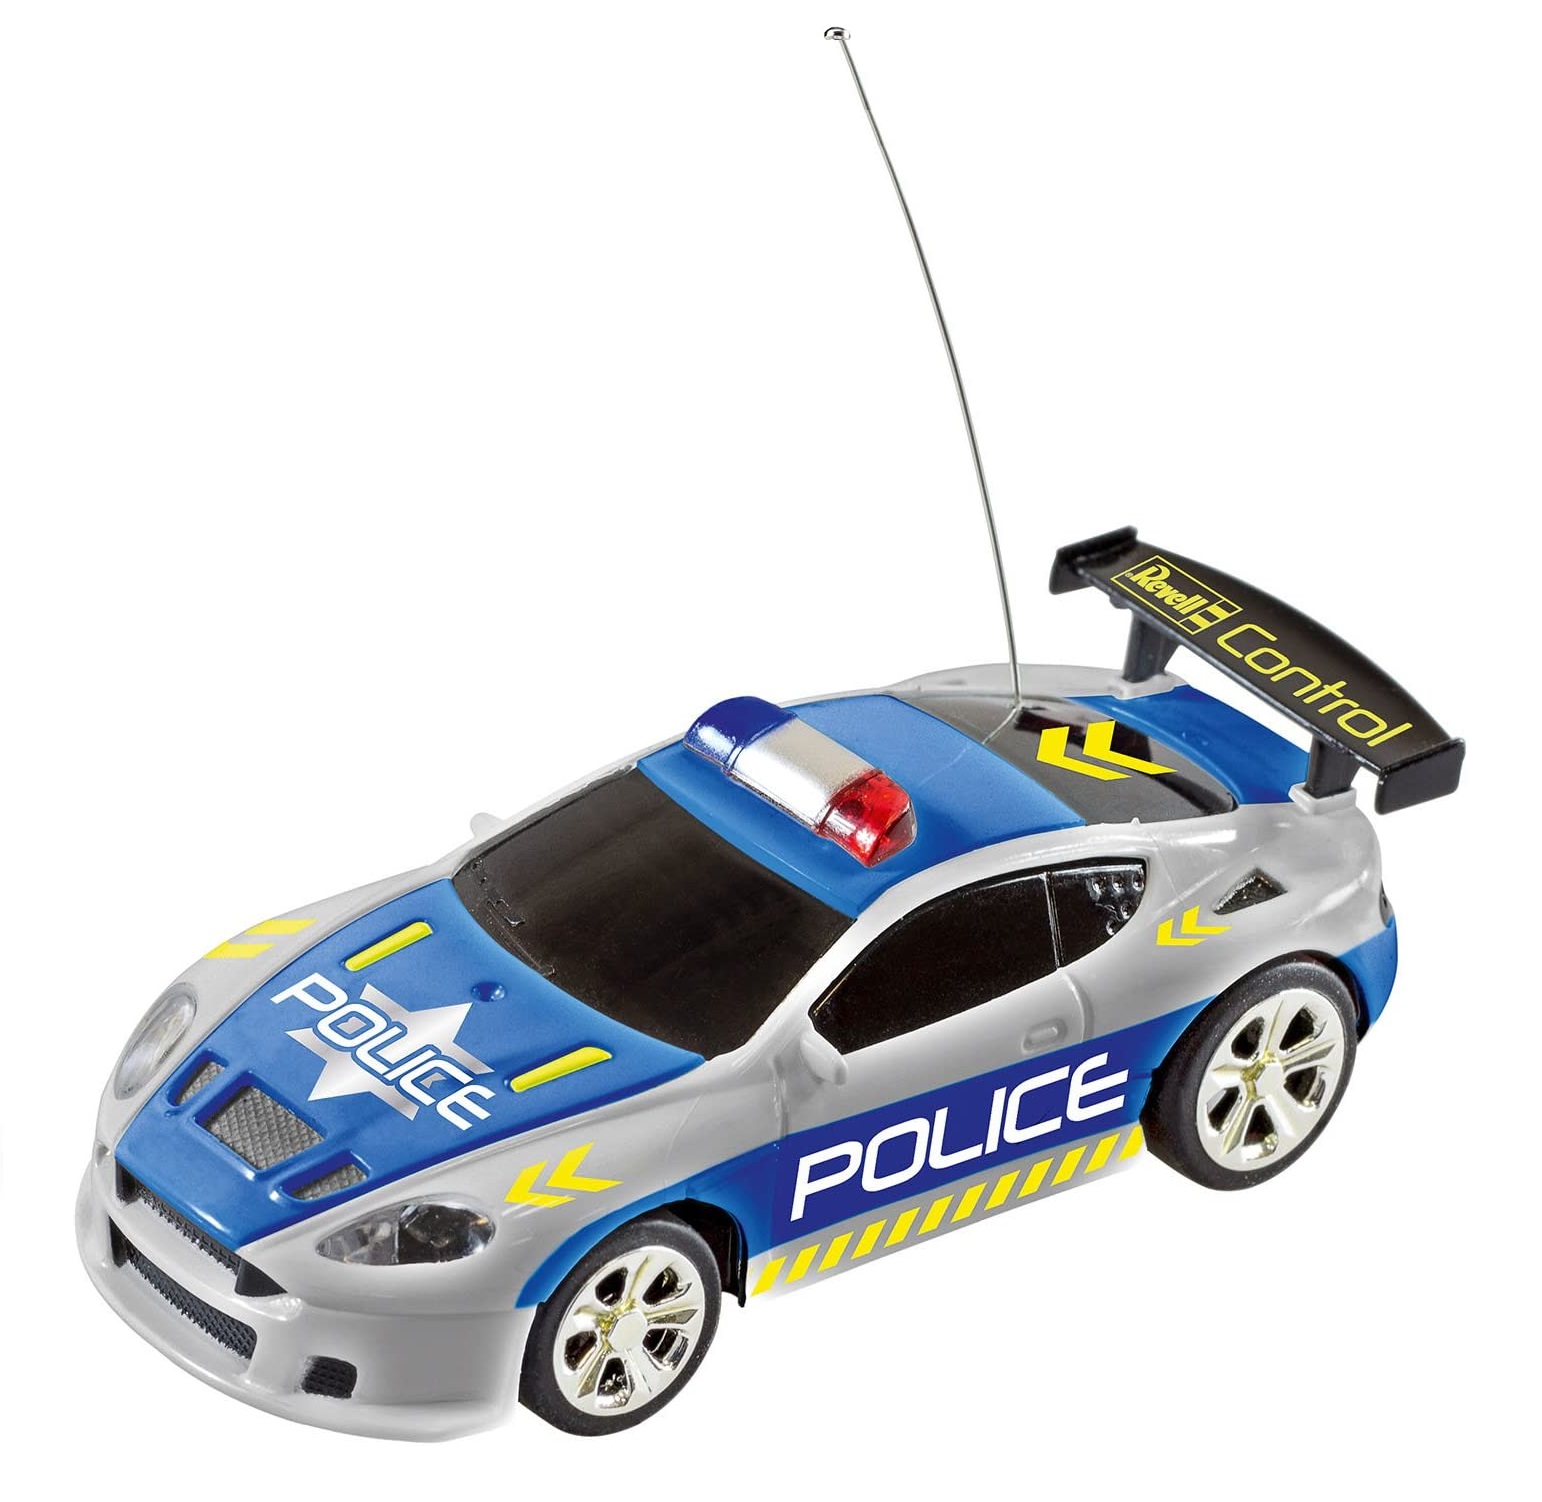 Mini samochód zdalnie sterowany RC Policja Revell 23559